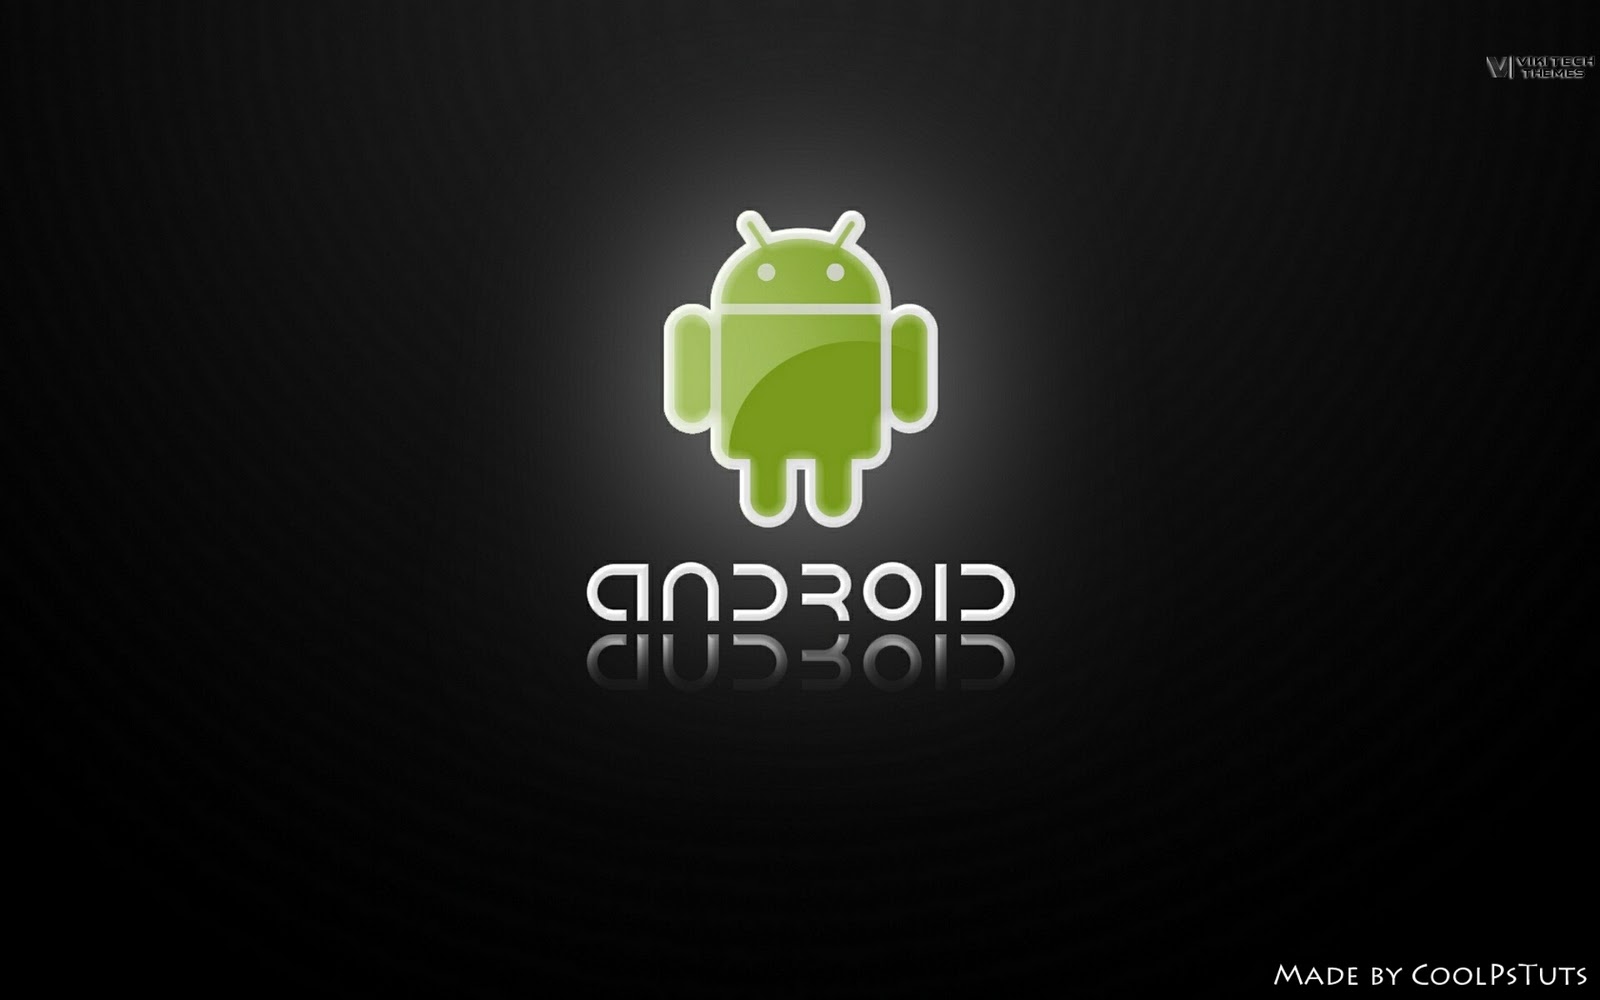 imagens de celular android 